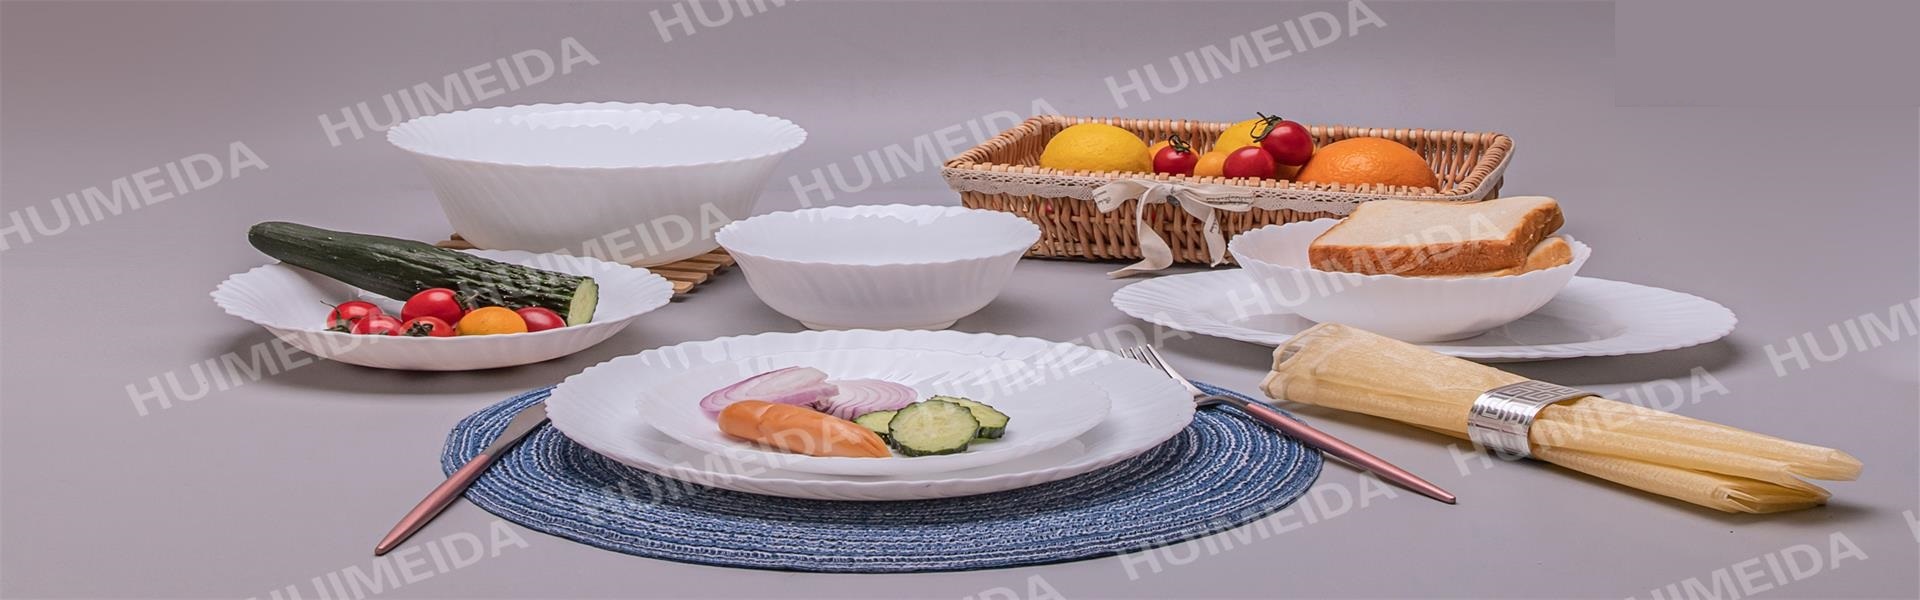 opálové sklo, skleněné nádobí, jídelní set,XIANNING HUIMEIDA INDUSTRY&TRADE CO.,LTD